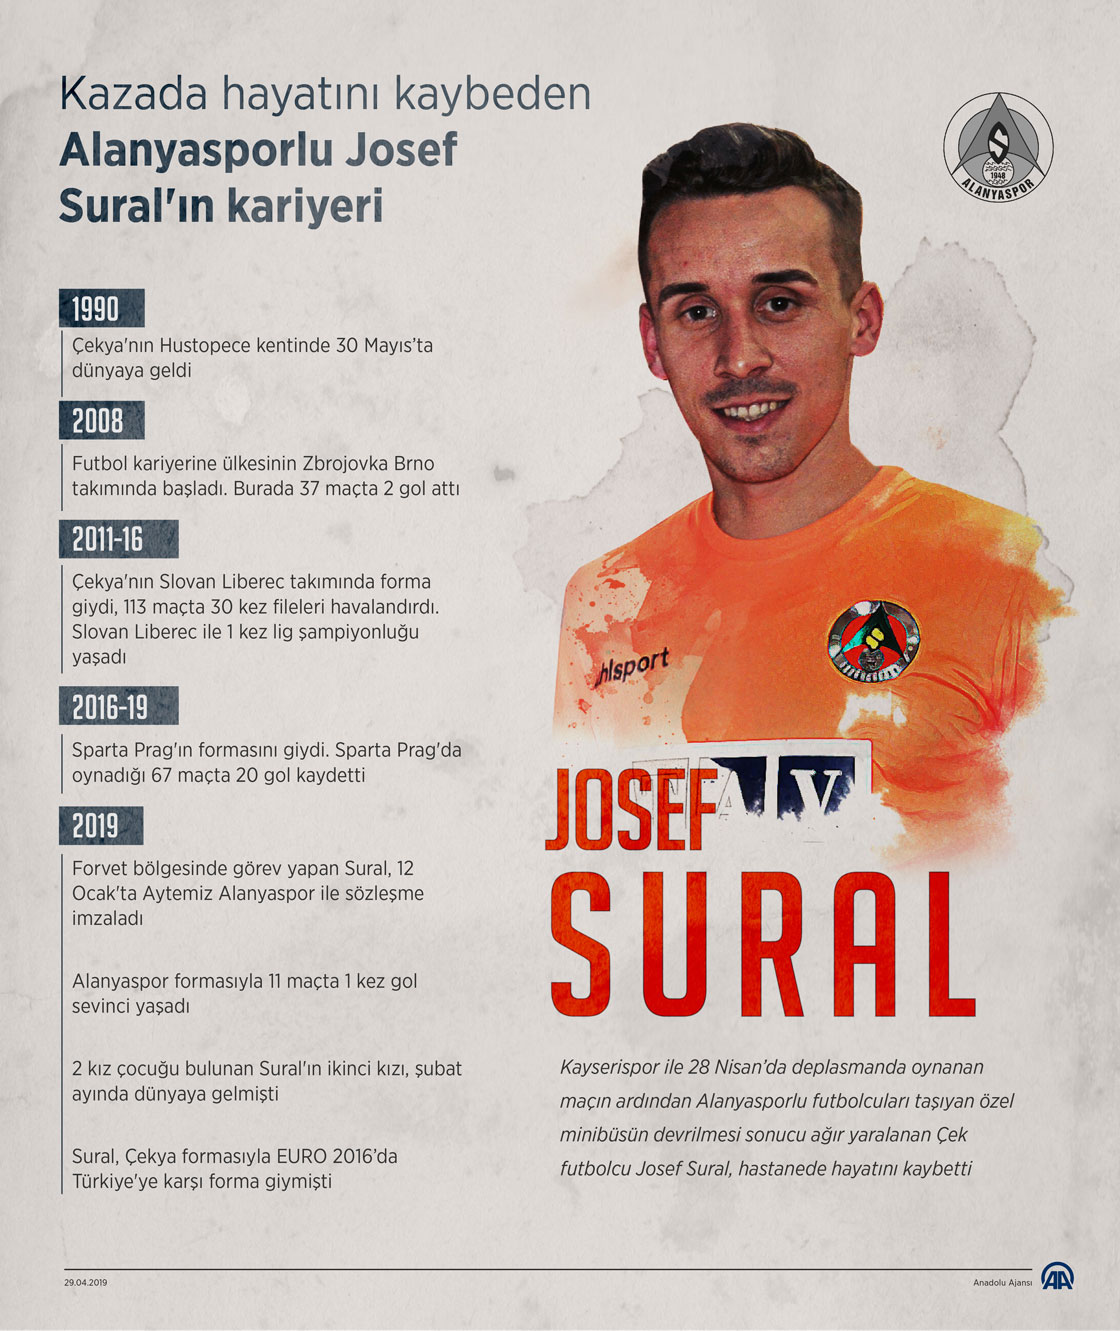  Kazada hayatını kaybeden Alanyasporlu Josef Sural'ın kariyeri